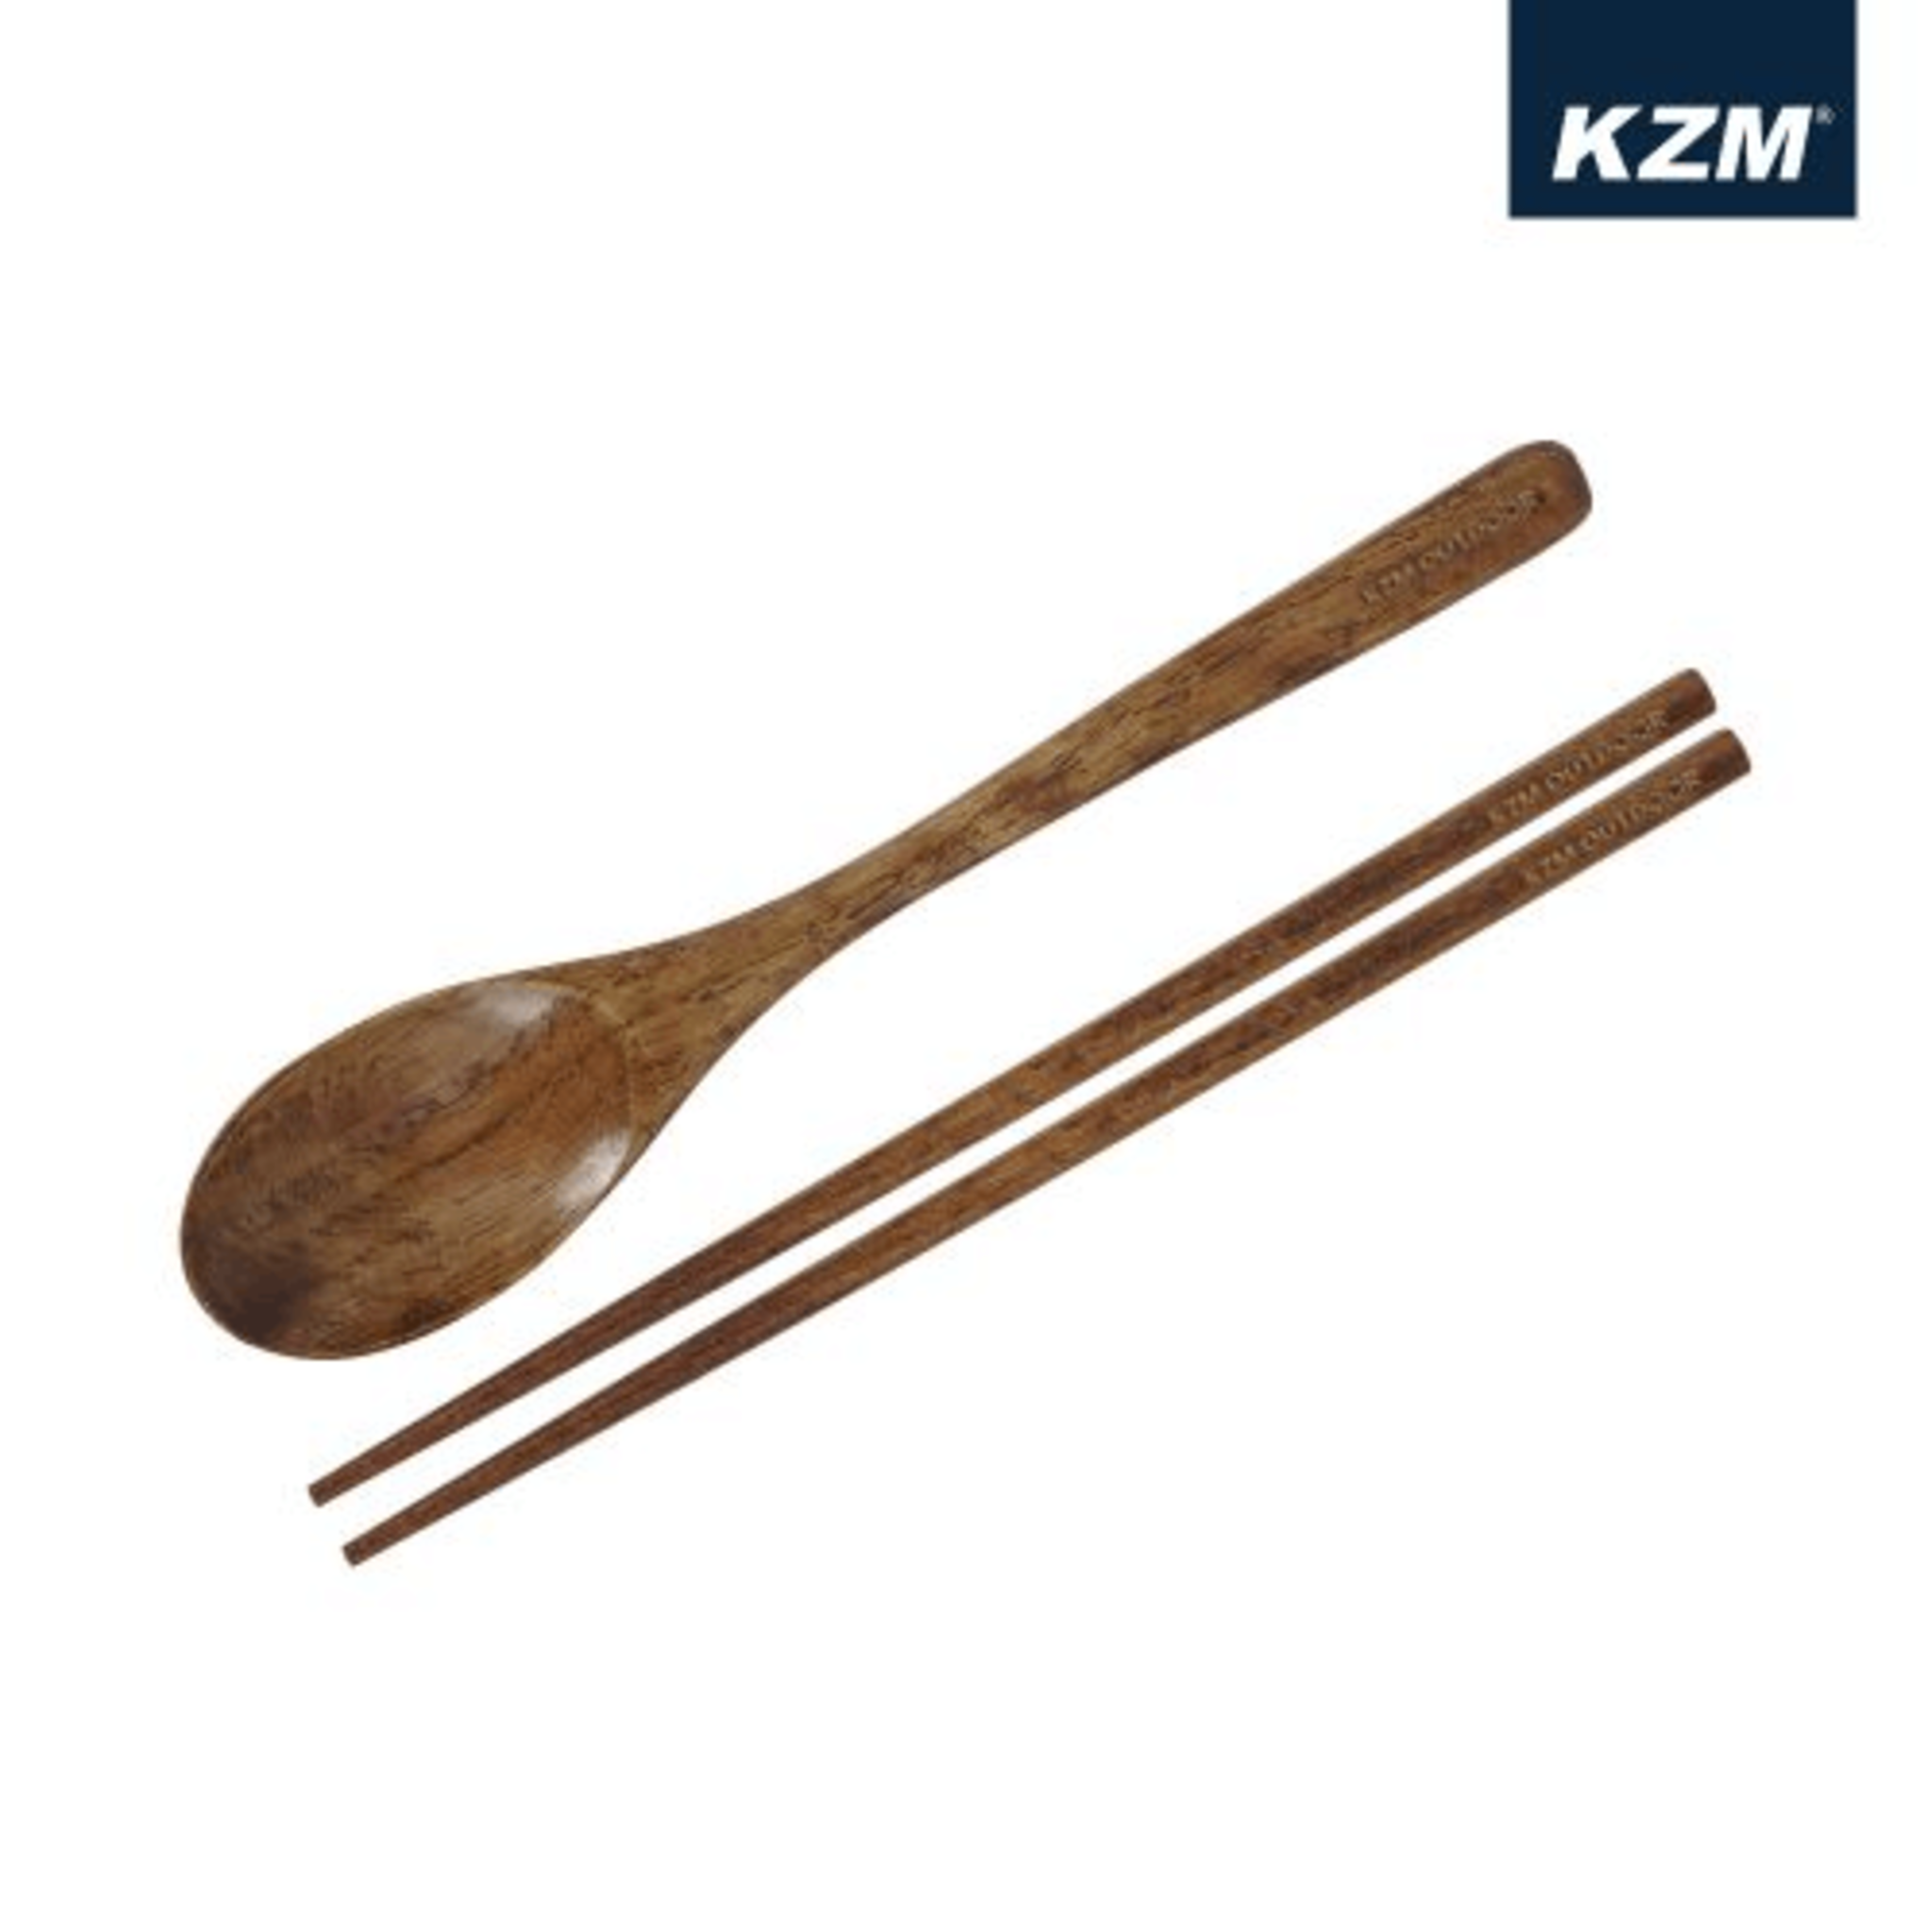 KAZMI KZM 原木餐具收納組 K21T3K10